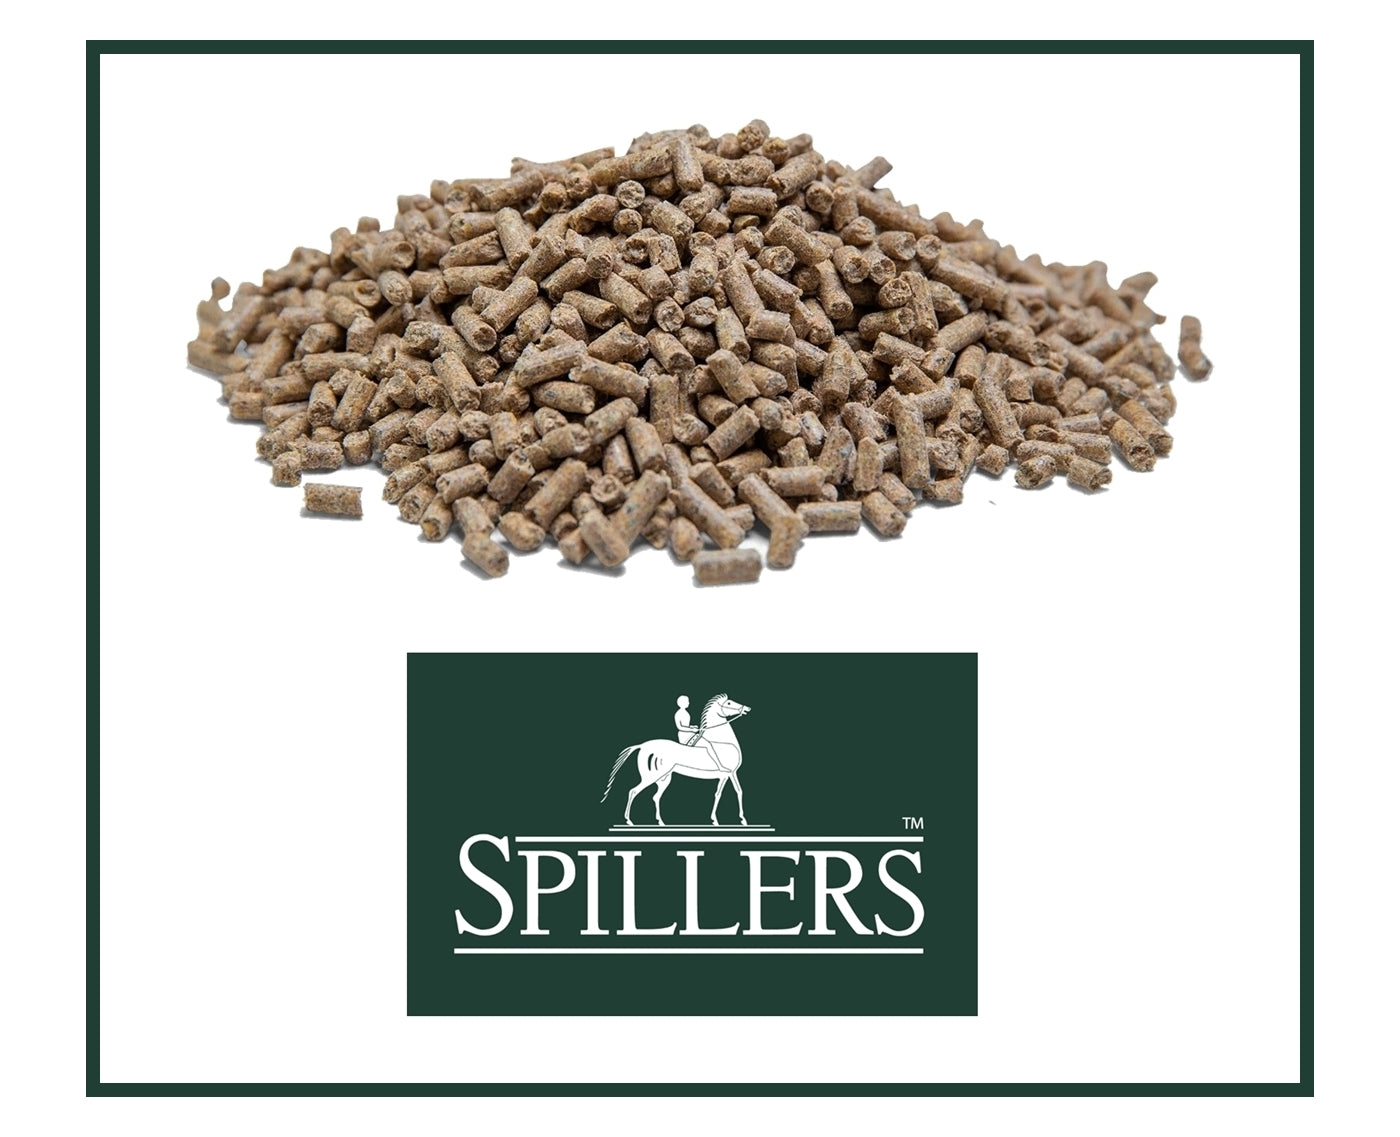 Spillers Lite & Lean Balancer | Horse Feed - Buy Online SPR Centre UK